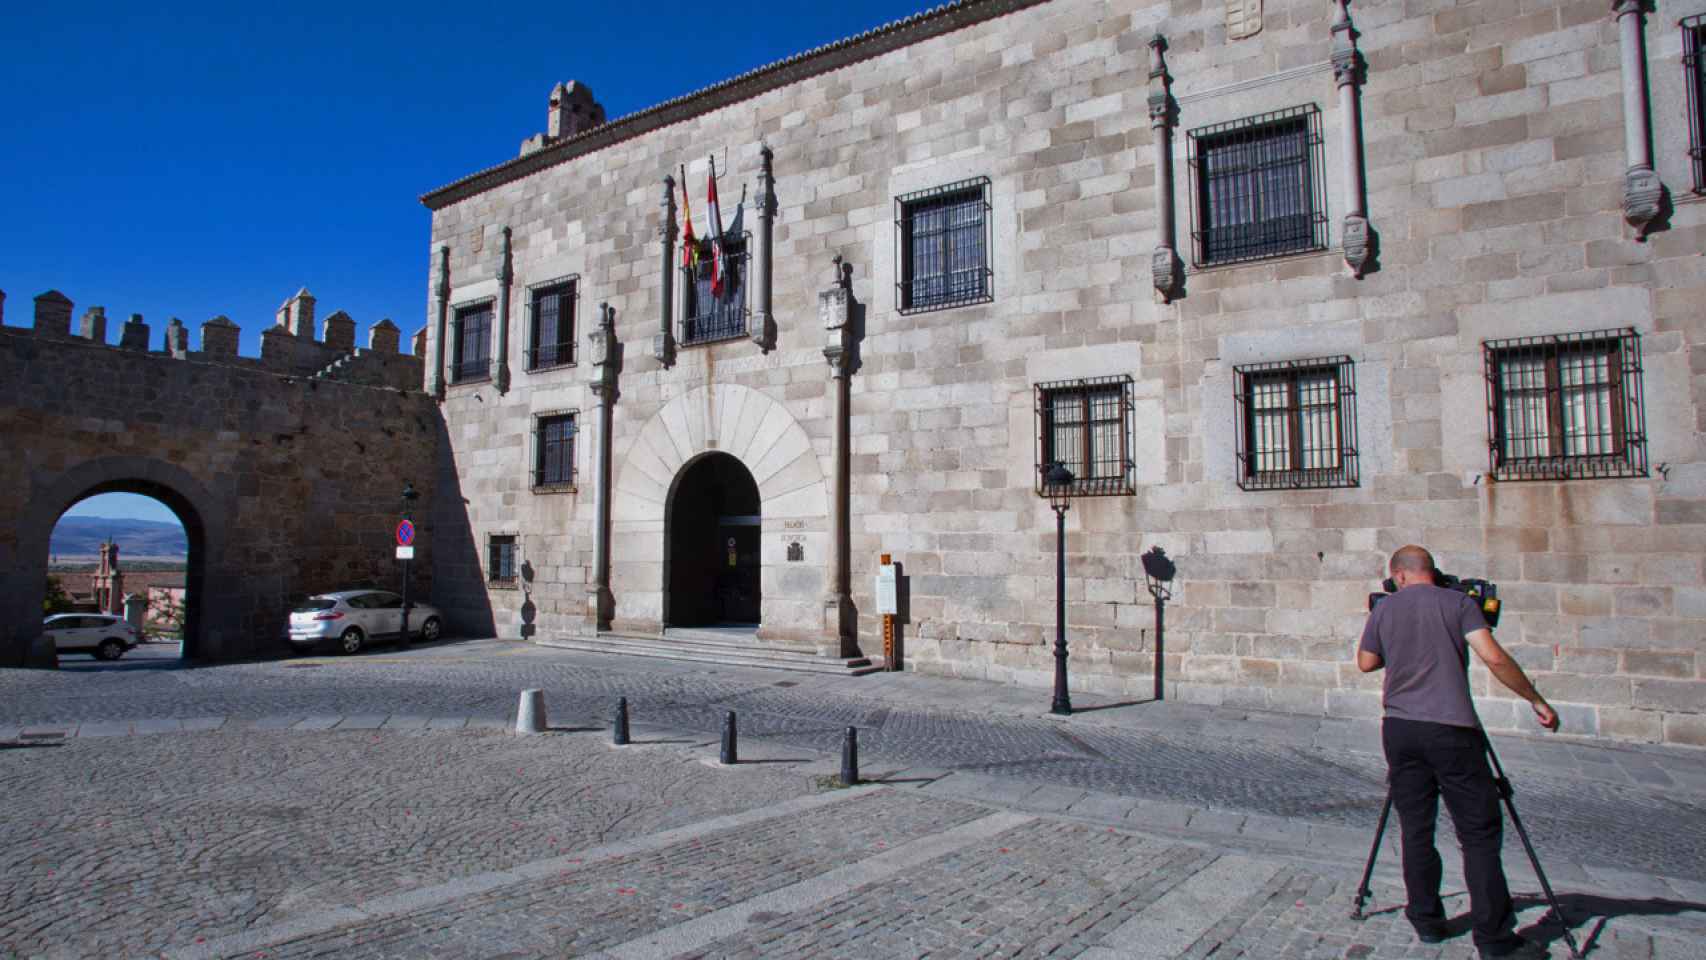 Audiencia Provincial de Ávila en imagen de archivo.